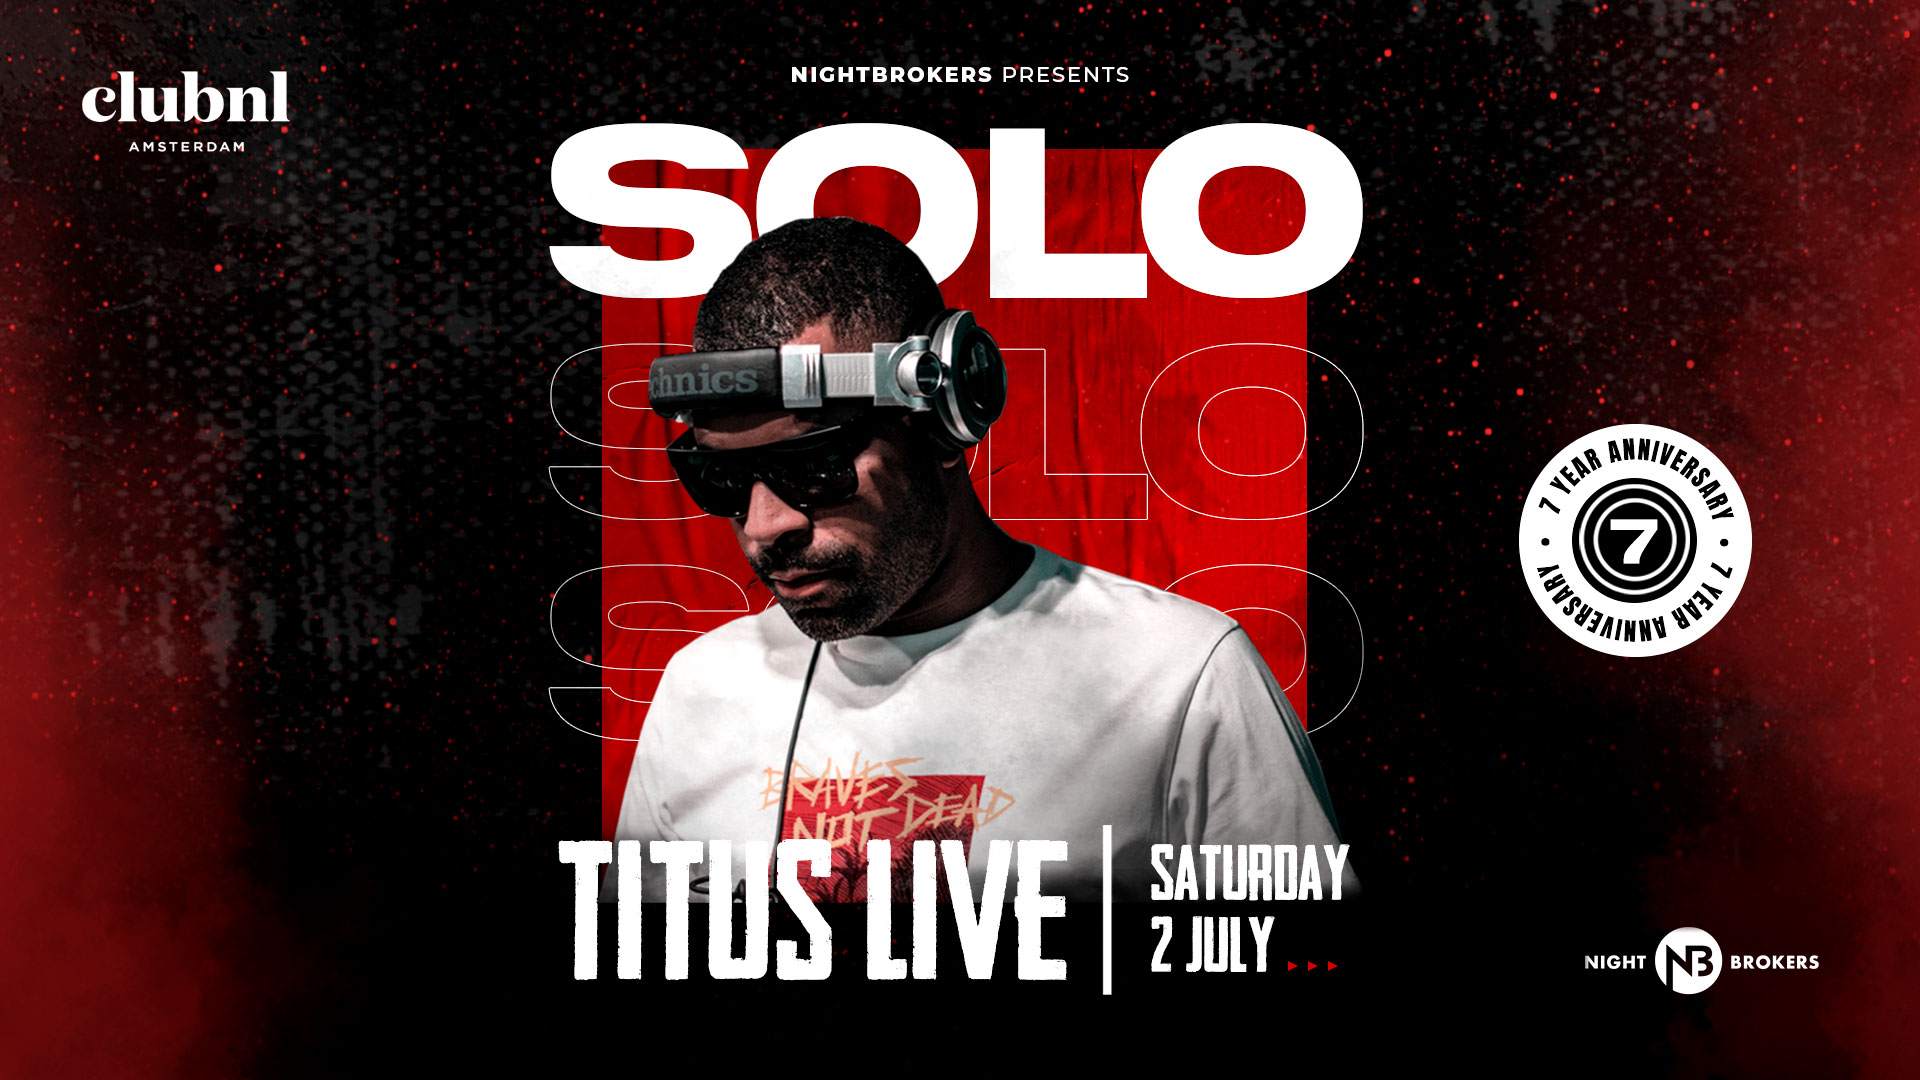 Solo / Titus Live - Página frontal